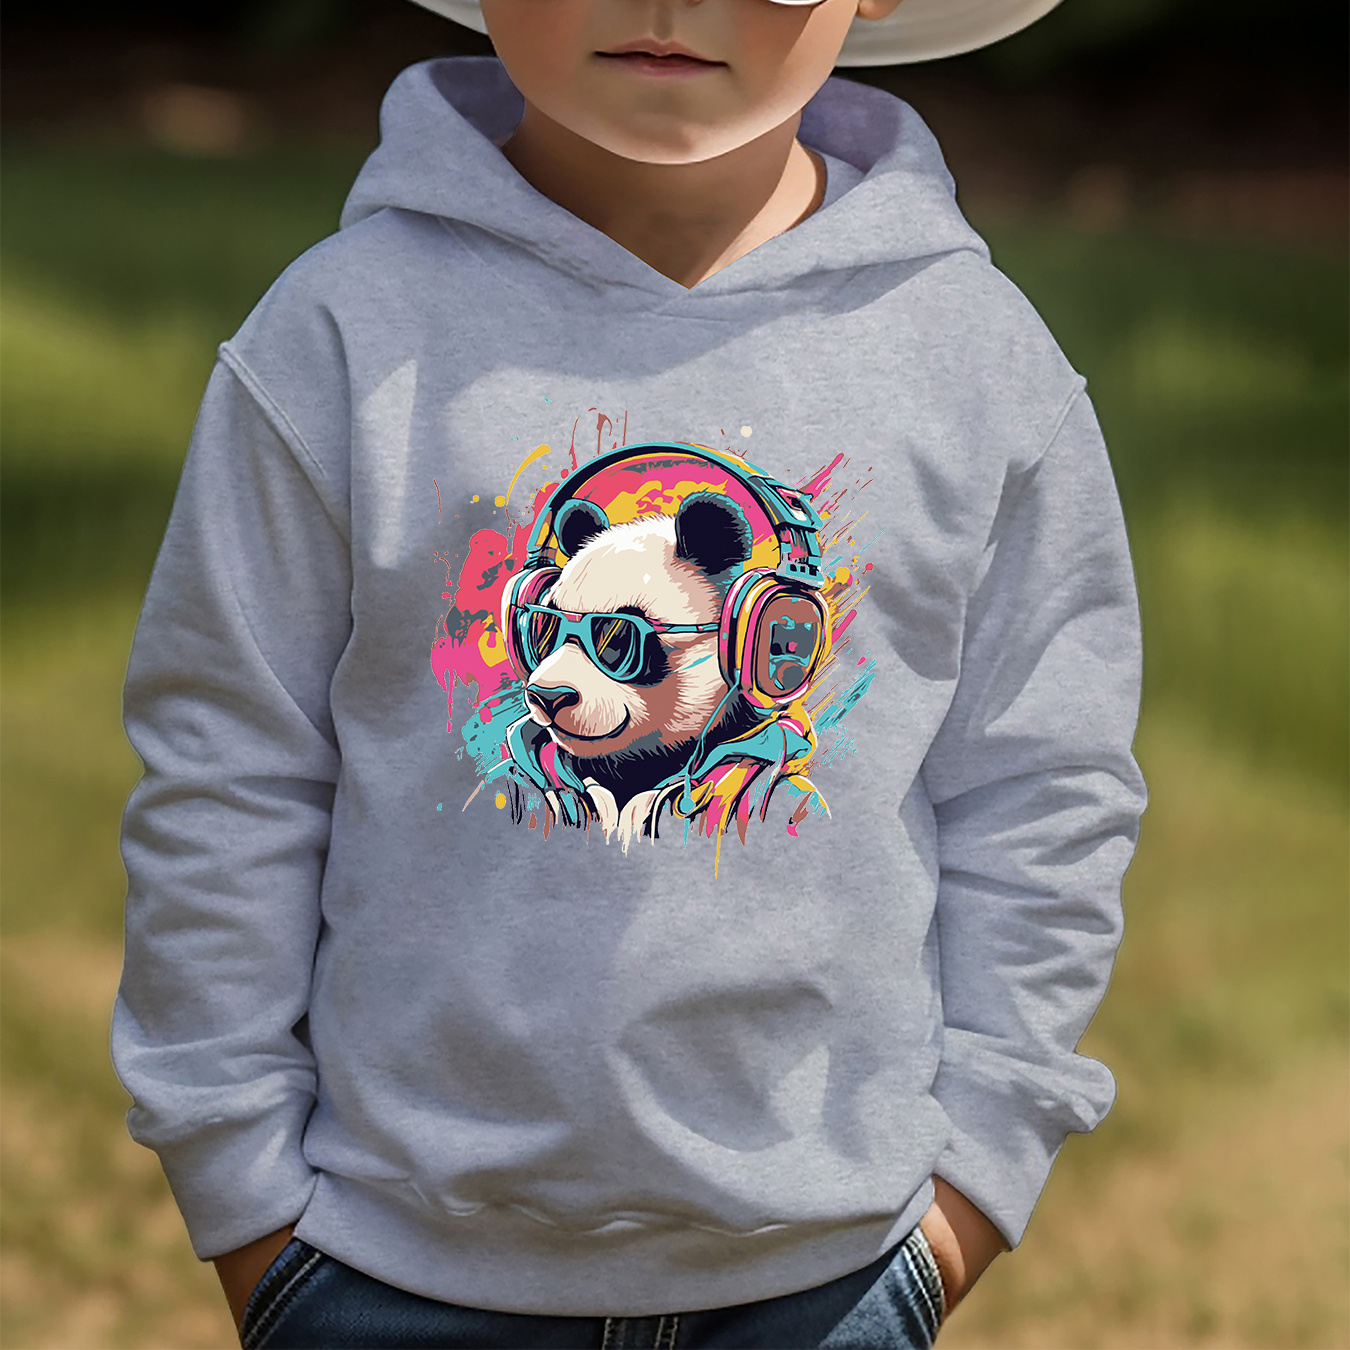 

Cartoon Panda Pattern Print Boys Kids Casual Creative Hoodie Pullover Sweatshirts, Hooded Long Sleeve Tops, Kids Clothing Outdoor